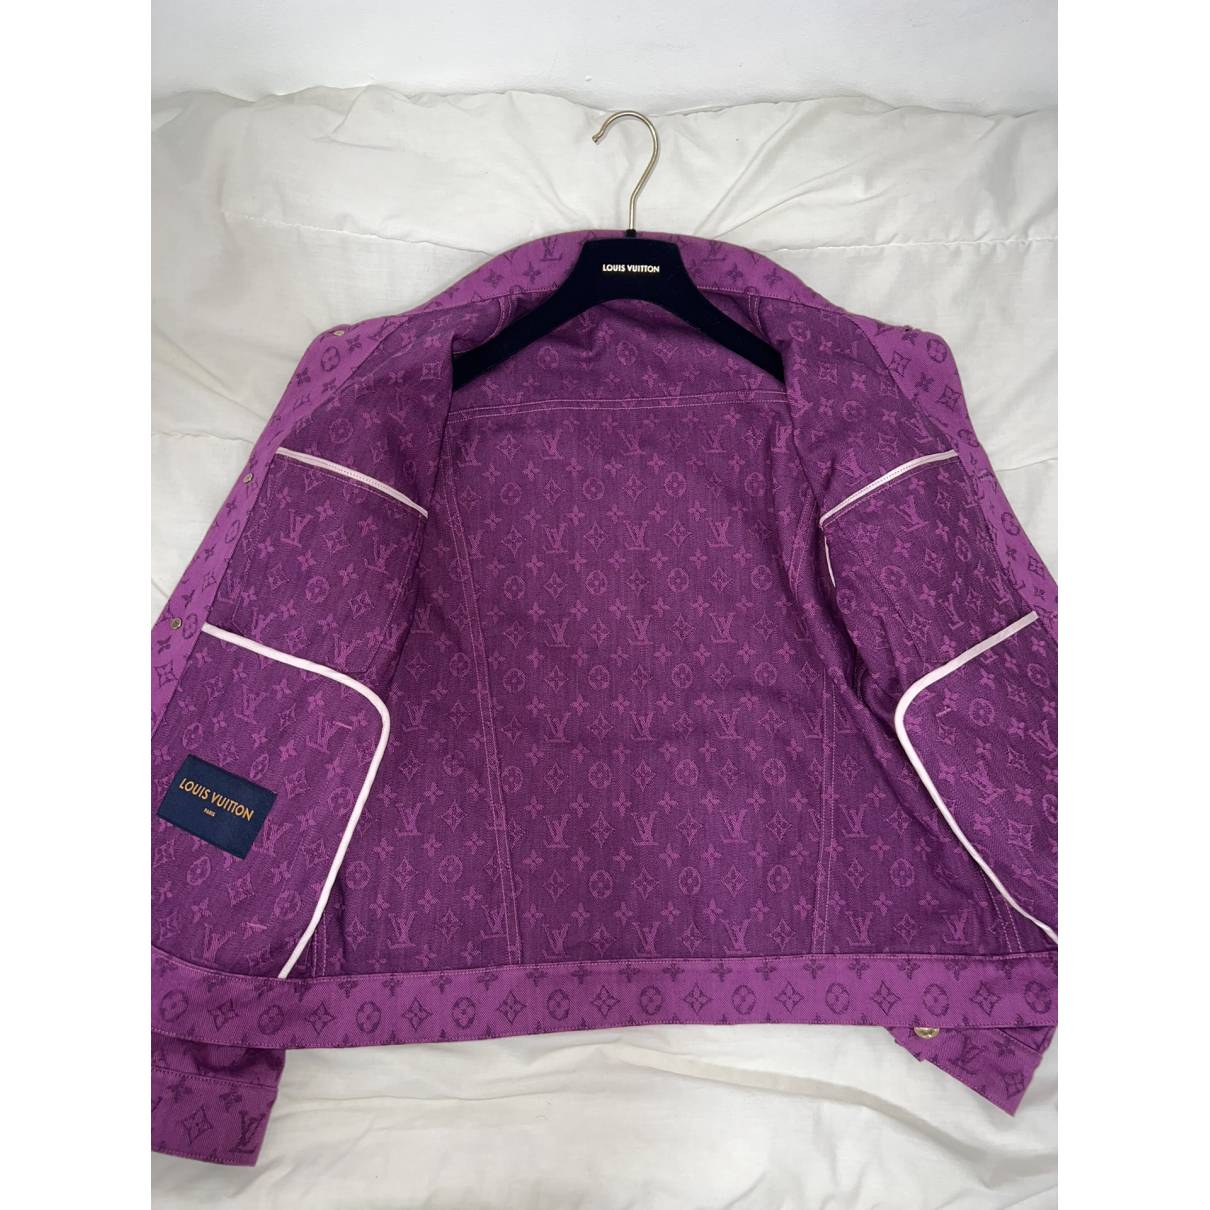 Louis Vuitton - Authenticated Jacket - Denim - Jeans Purple Plain for Men, Very Good Condition